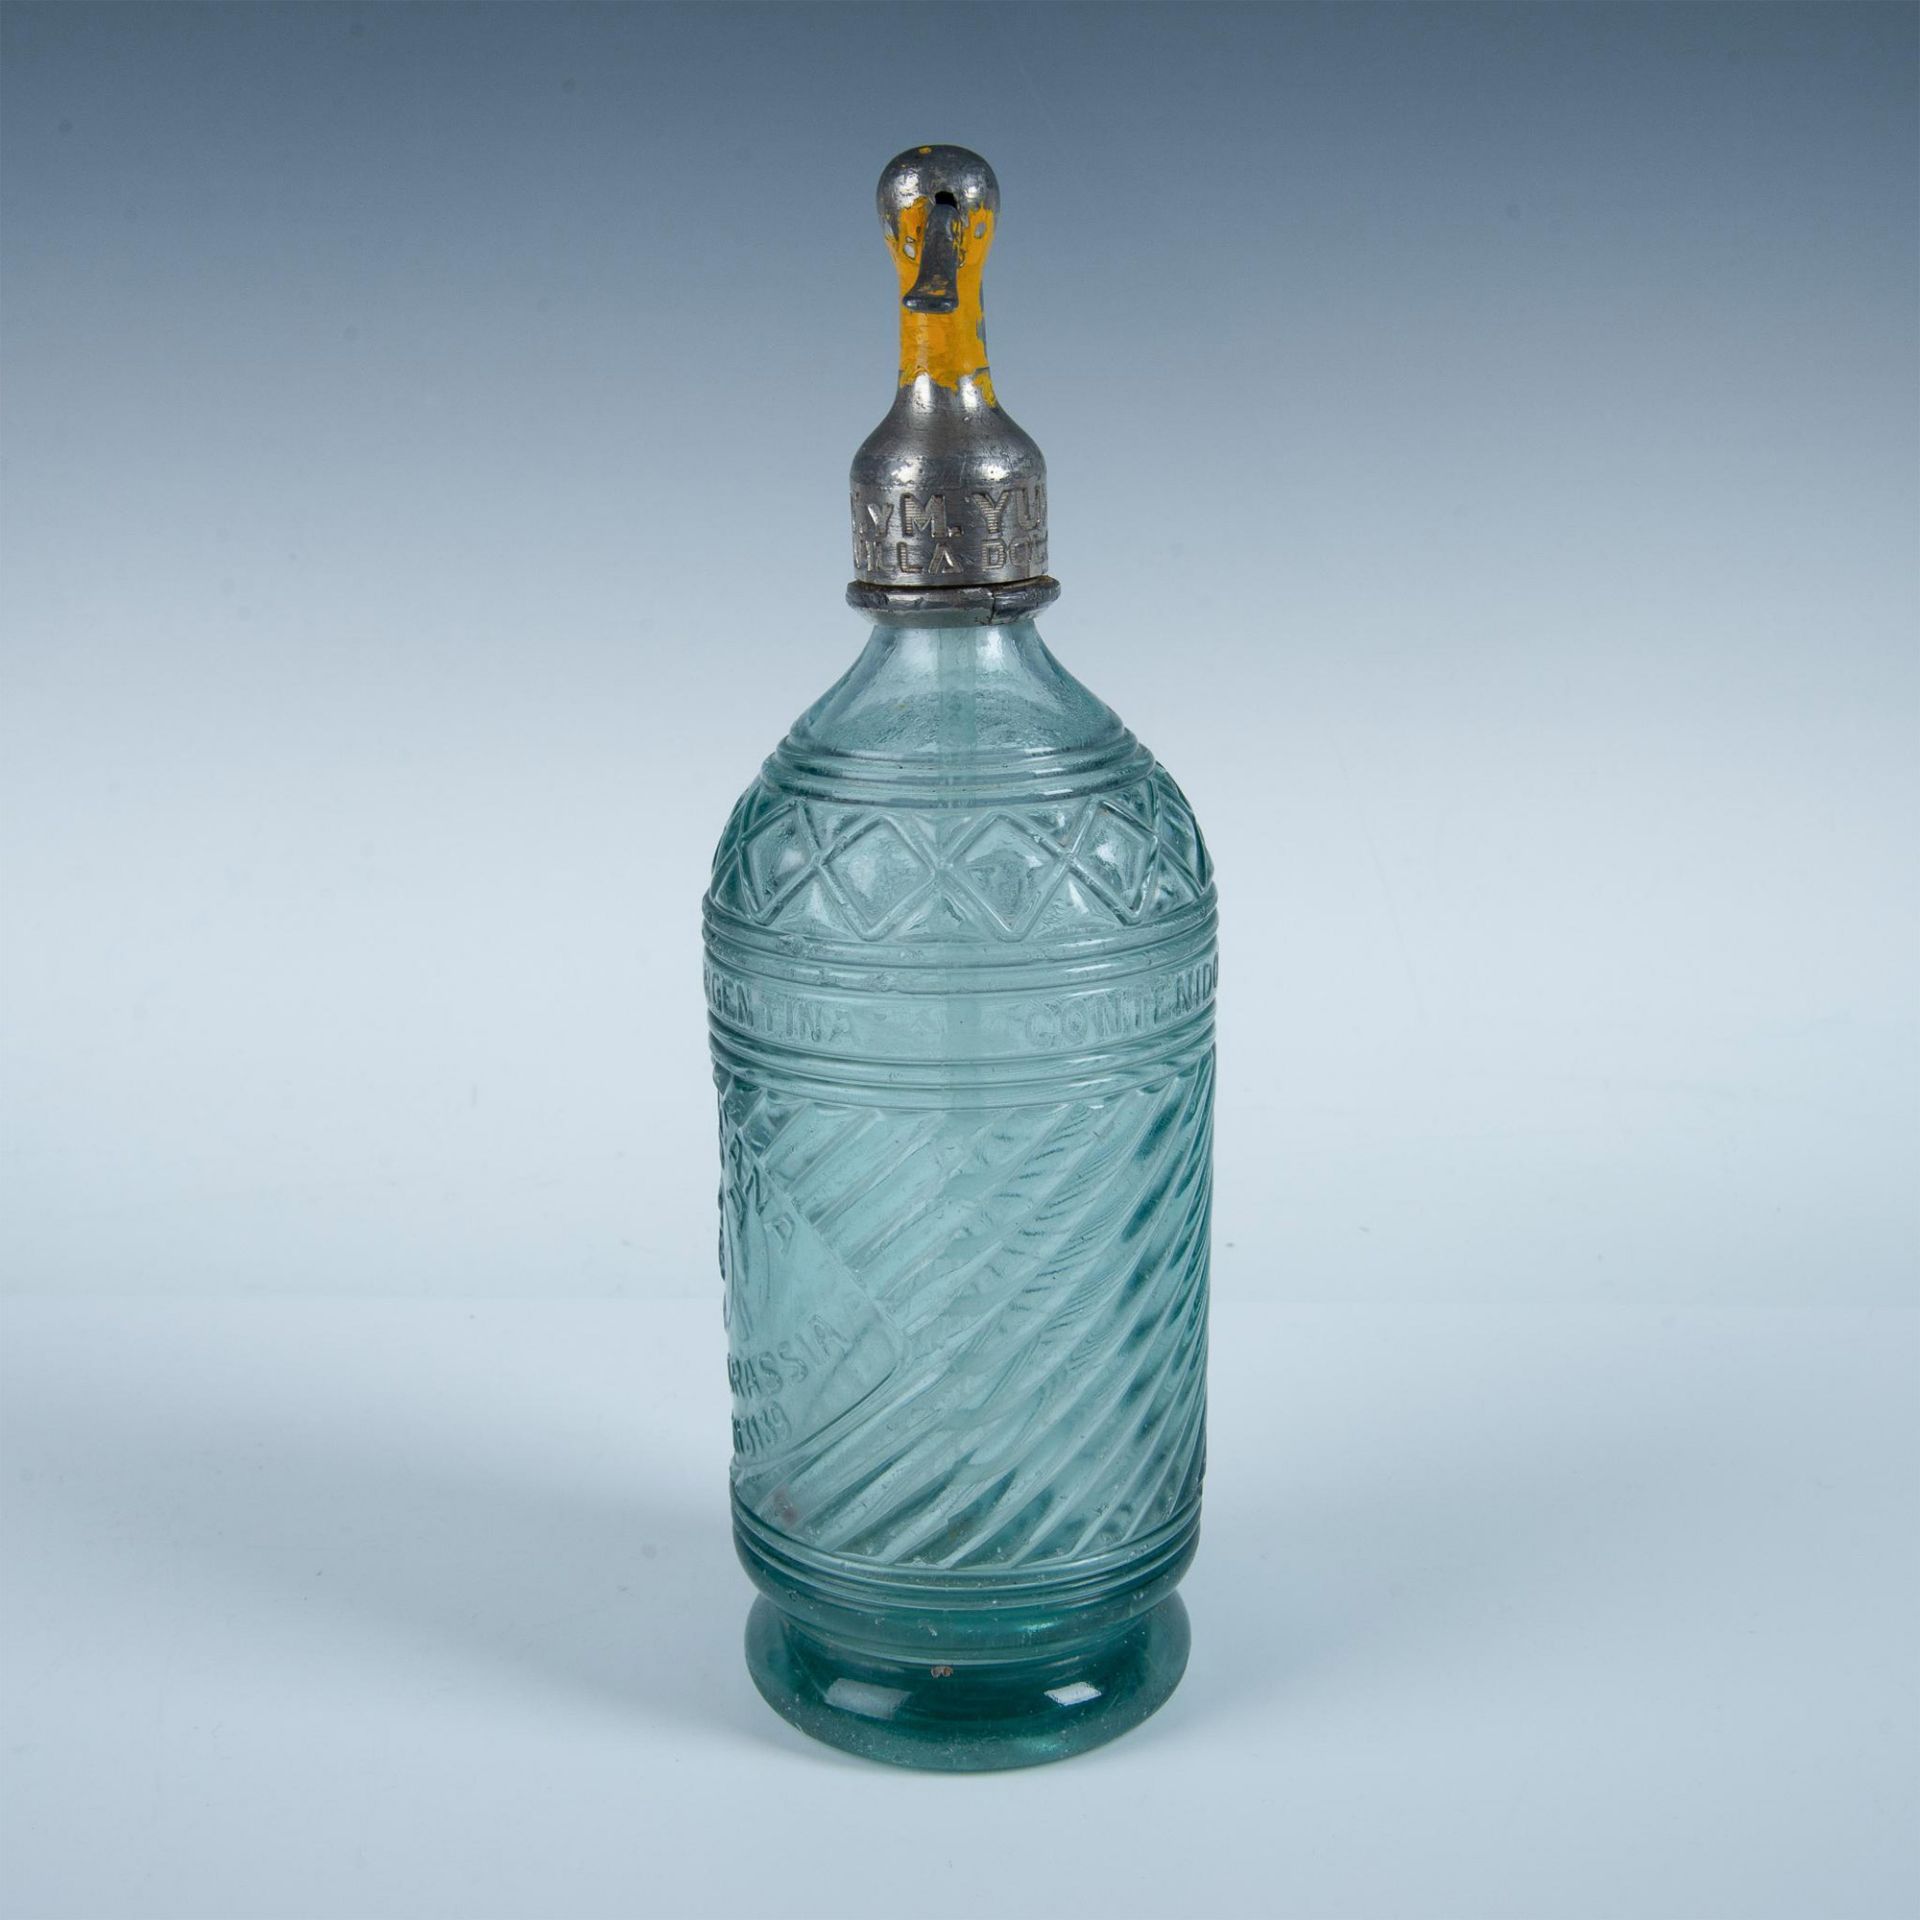 Antique Seltzer Glass Bottle Argentina, La Africana Soda - Image 5 of 7